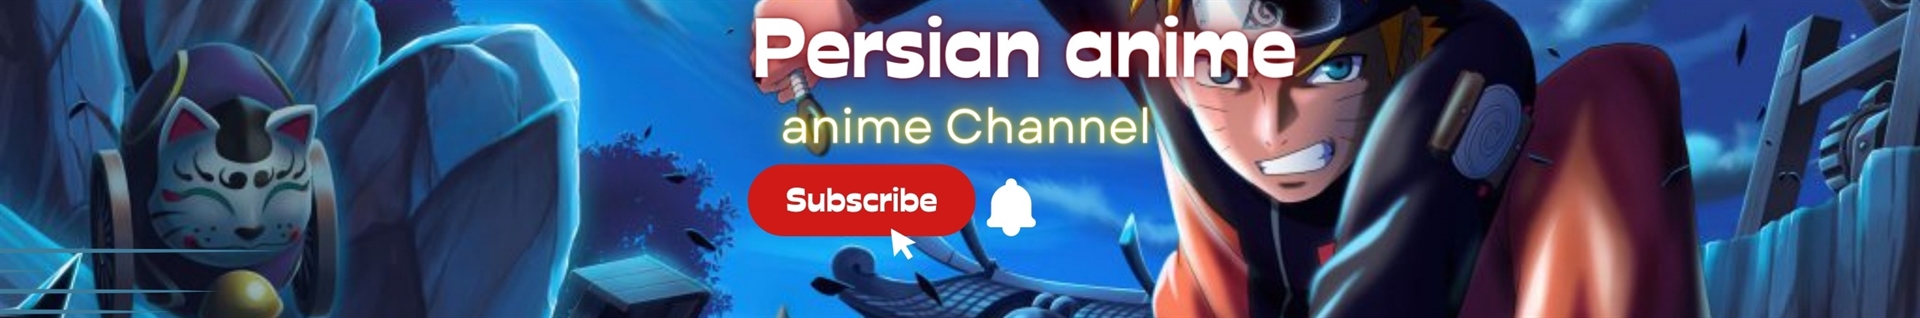 Persian anime